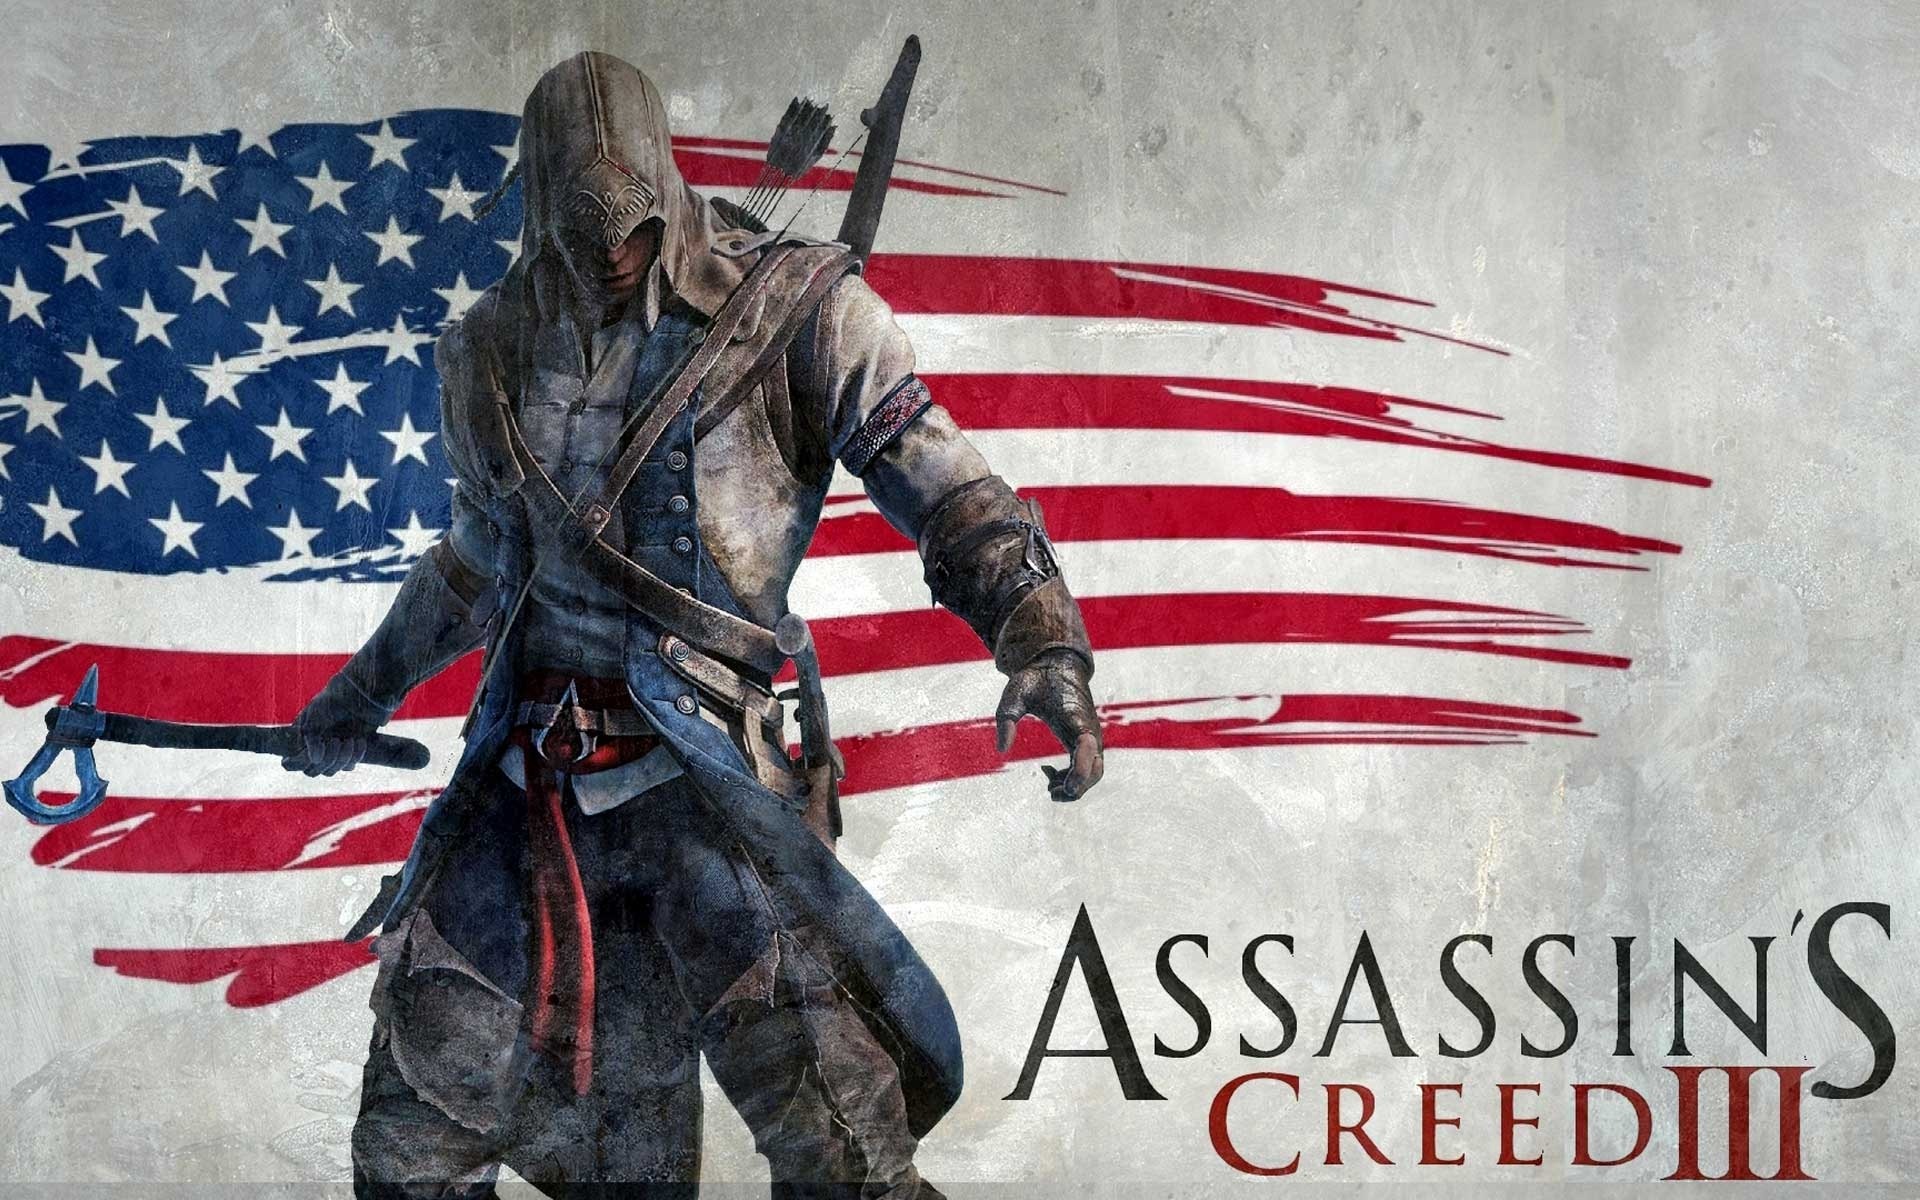 یک قاتل در طول انقلاب آمریکا | assassin's creed III game download free 